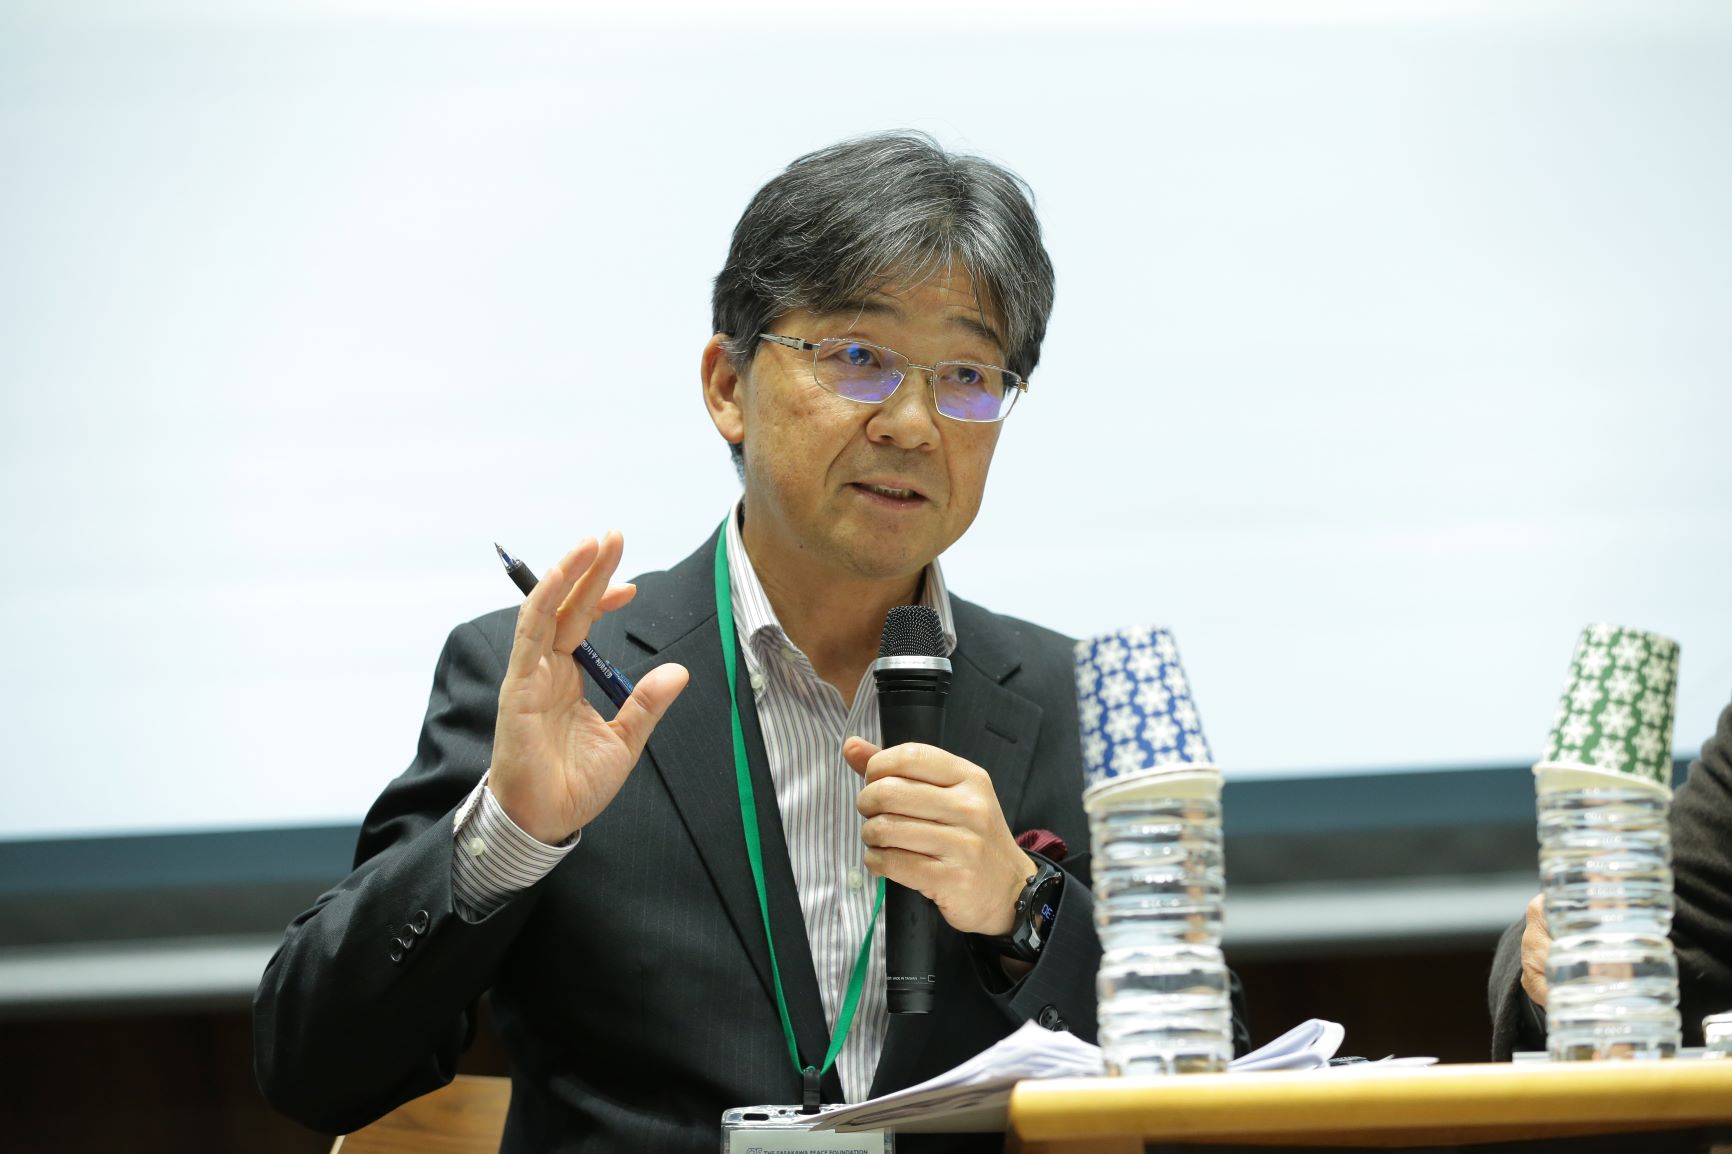 Professor Kimiaki Nishida of Rissho University